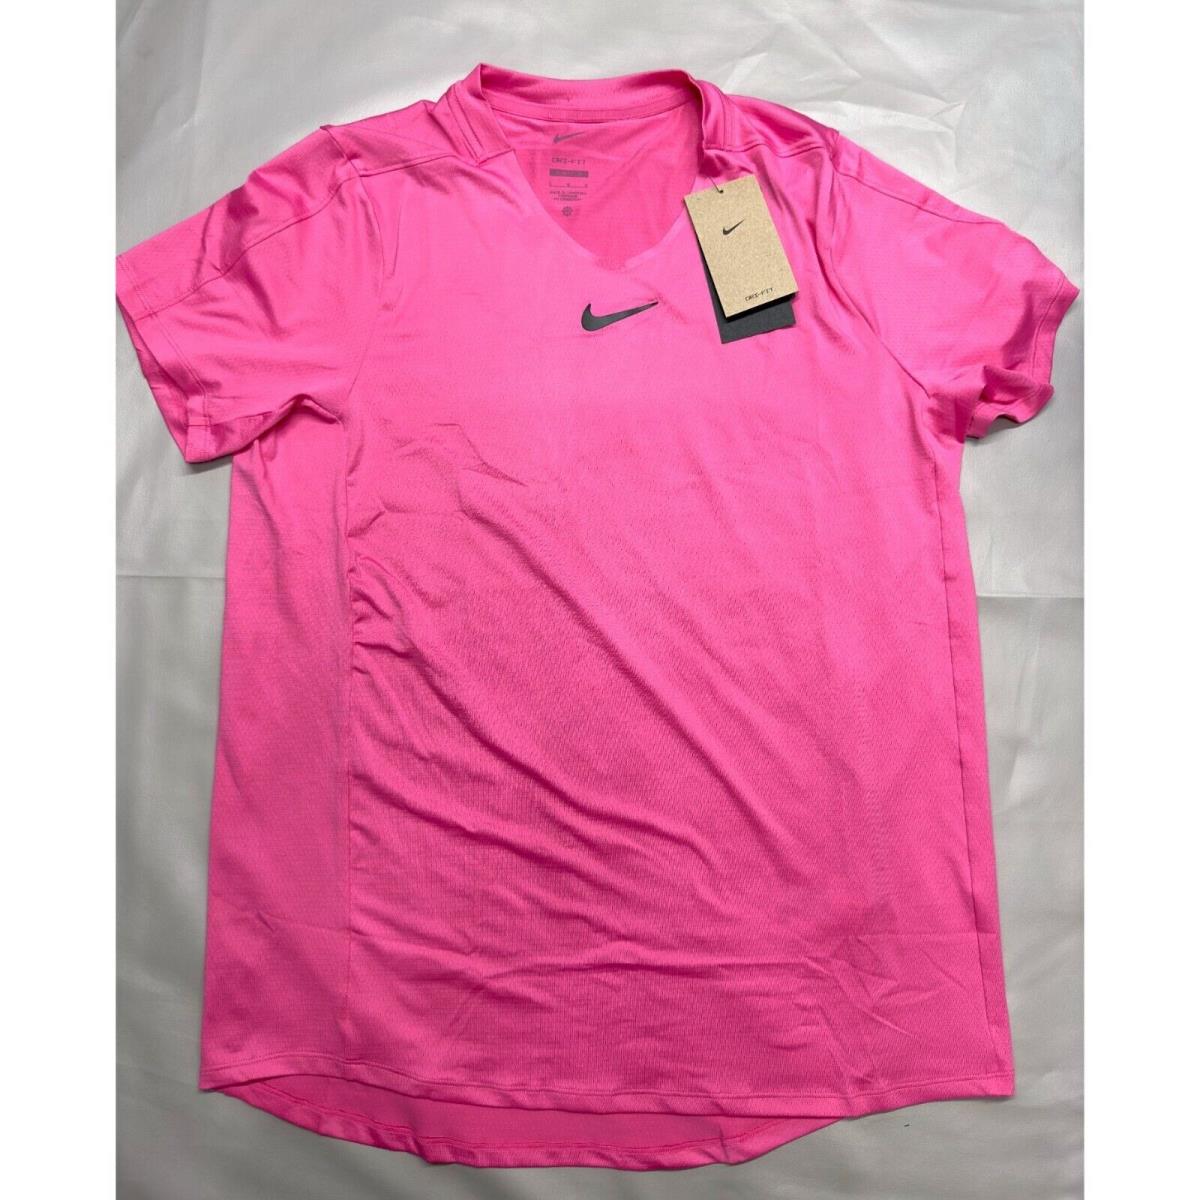 Nike Men`s Large Dri-fit Advantage Pink/black Tennis Shirt DR6548-684 Rare